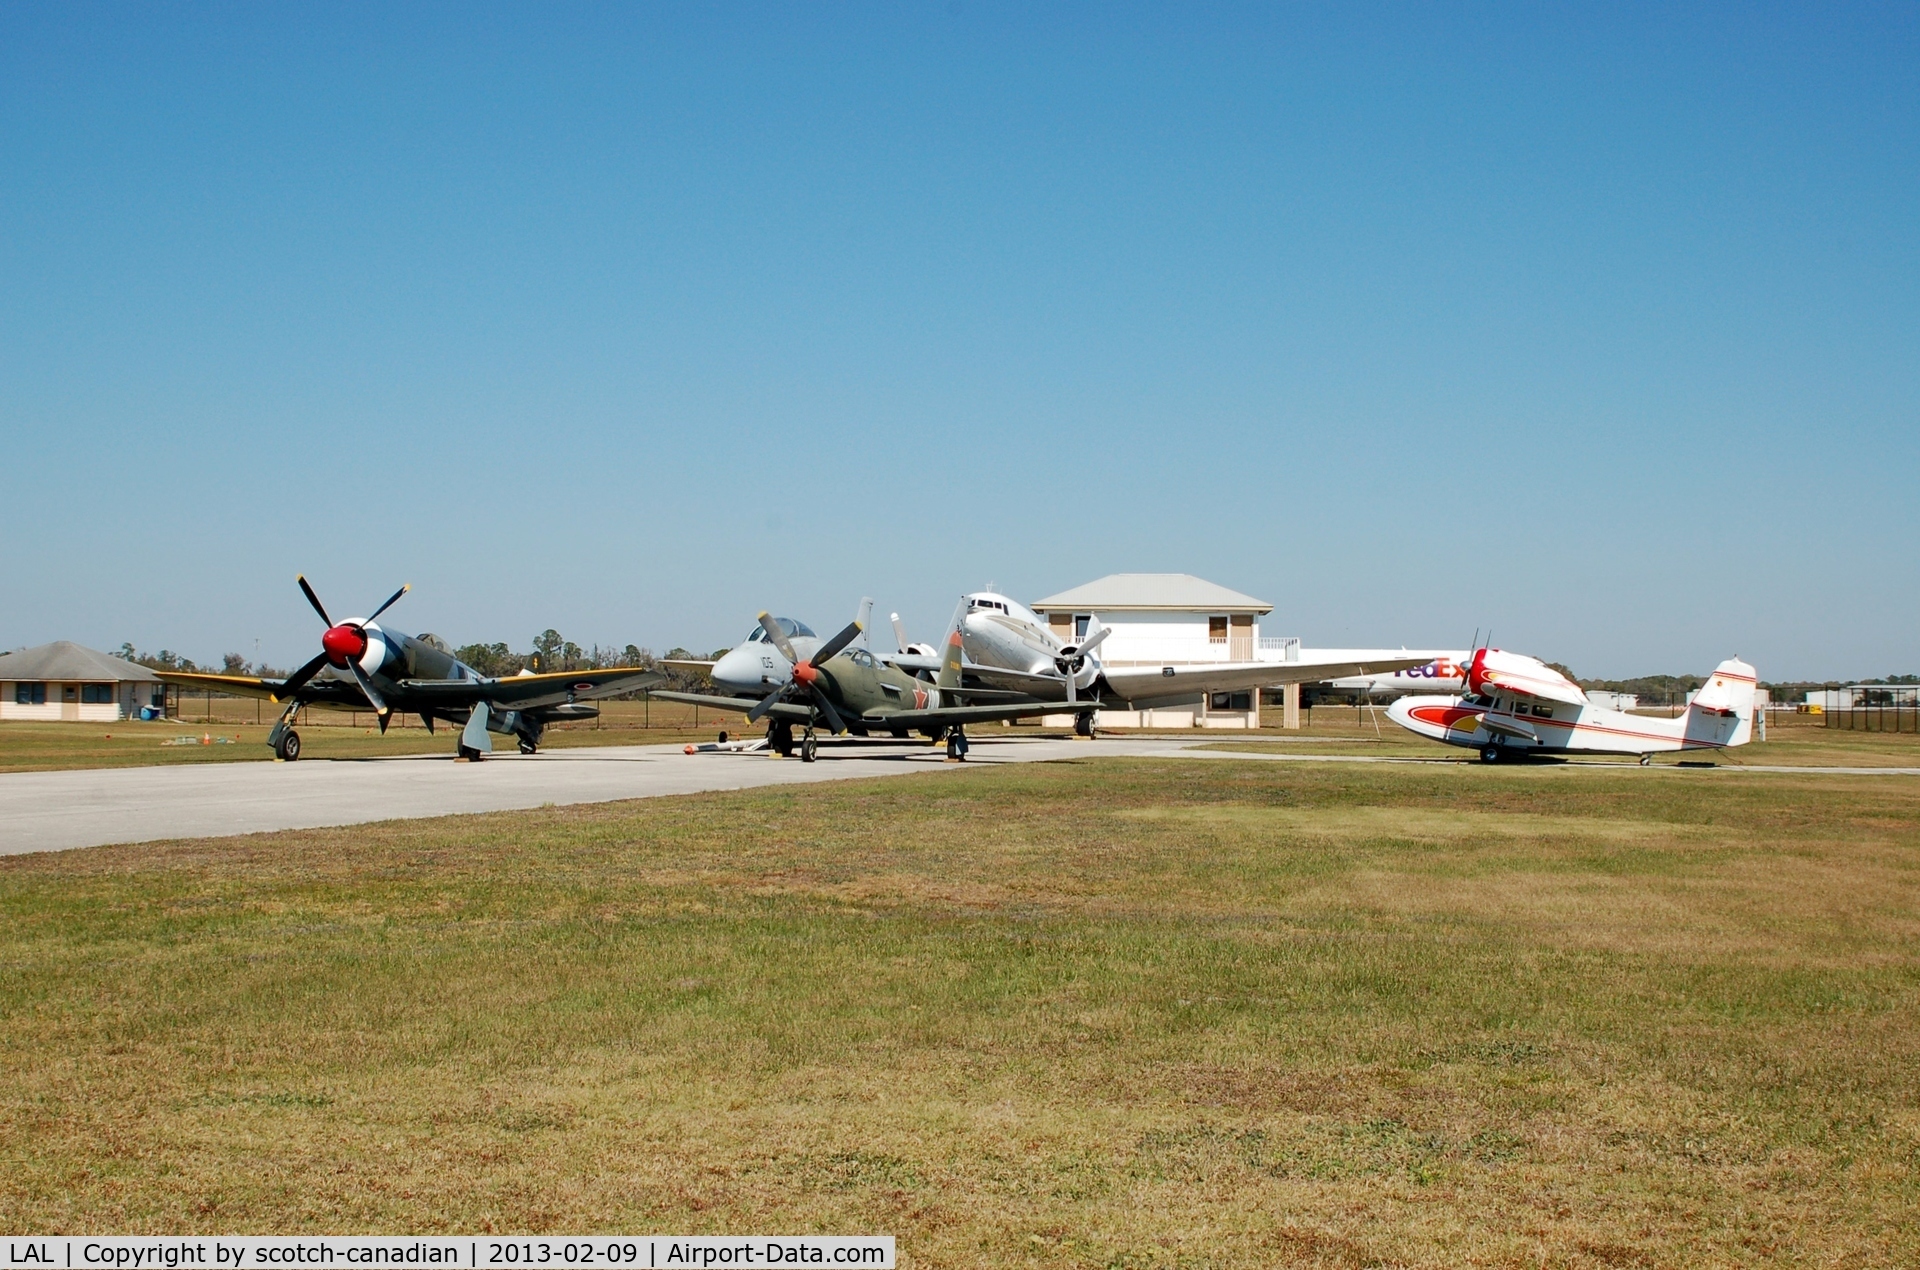 Lakeland Linder Regional Airport (LAL) - Collection of classic aircraft at Lakeland Linder Regional Airport, Lakeland, FL 